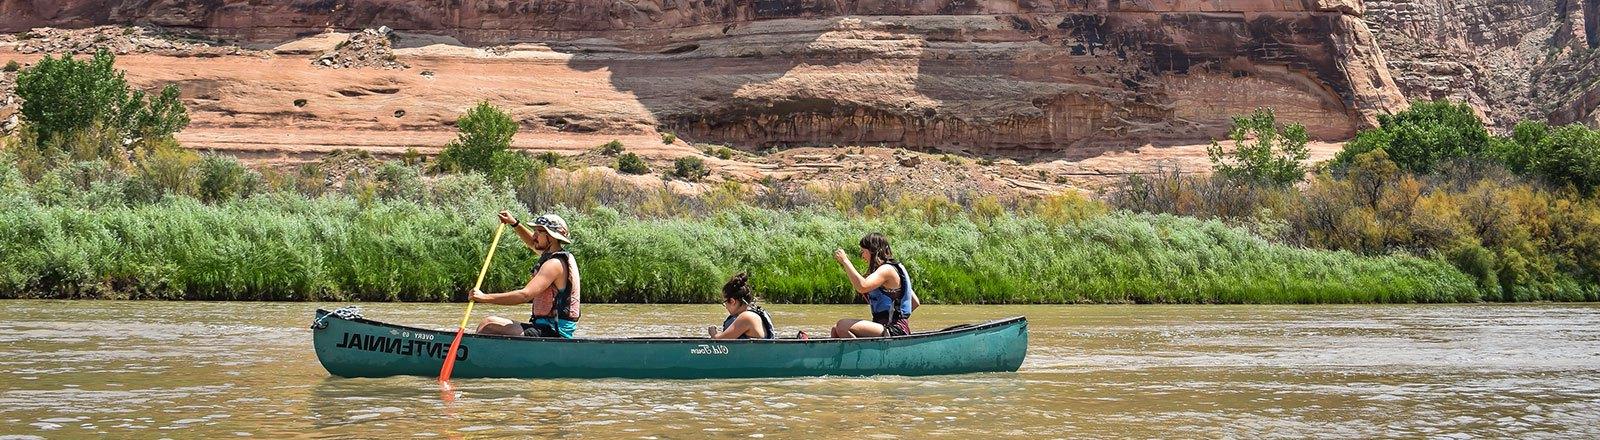 科罗拉多河上坐着独木舟的地理学生